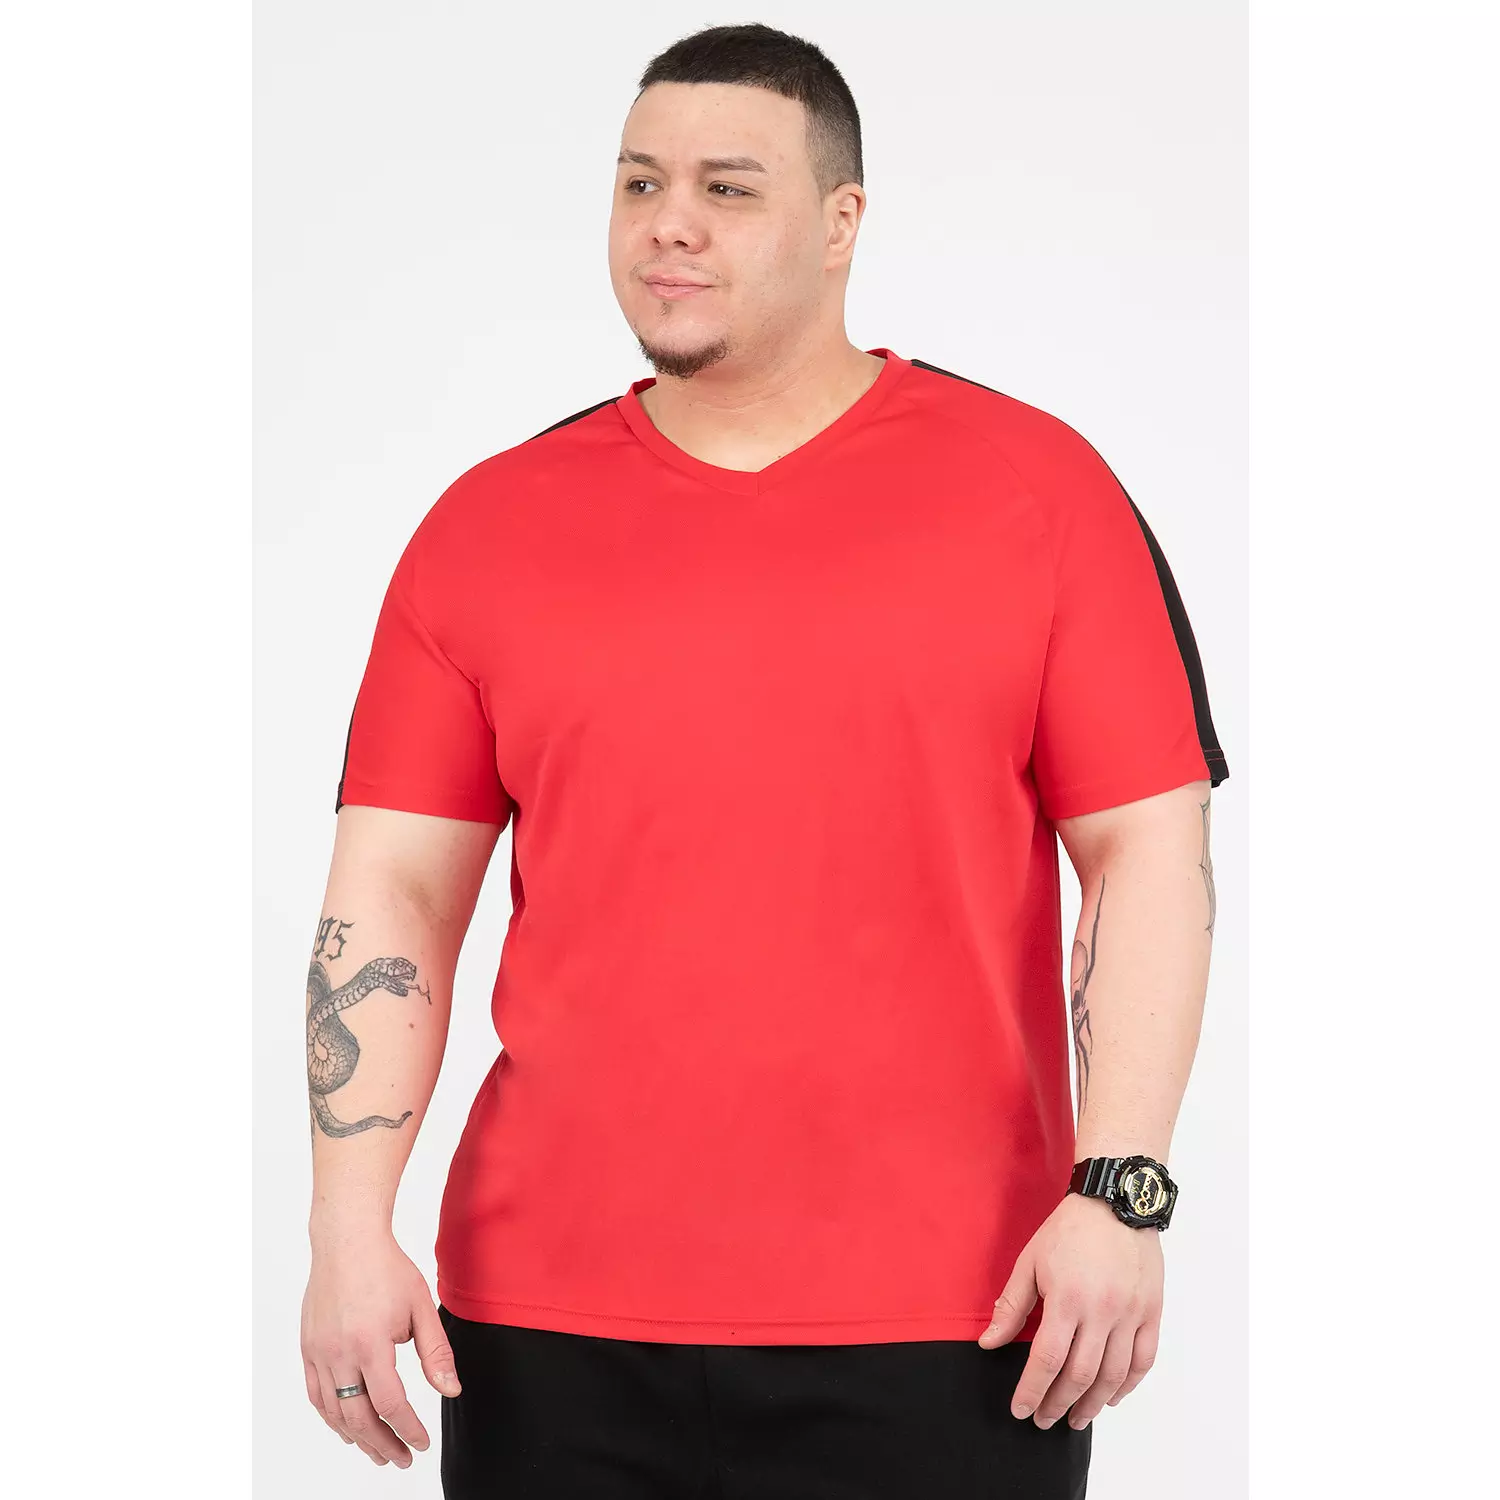 T-shirt actif bicolore avec col en V - Rouge avec accents noirs - Taille plus